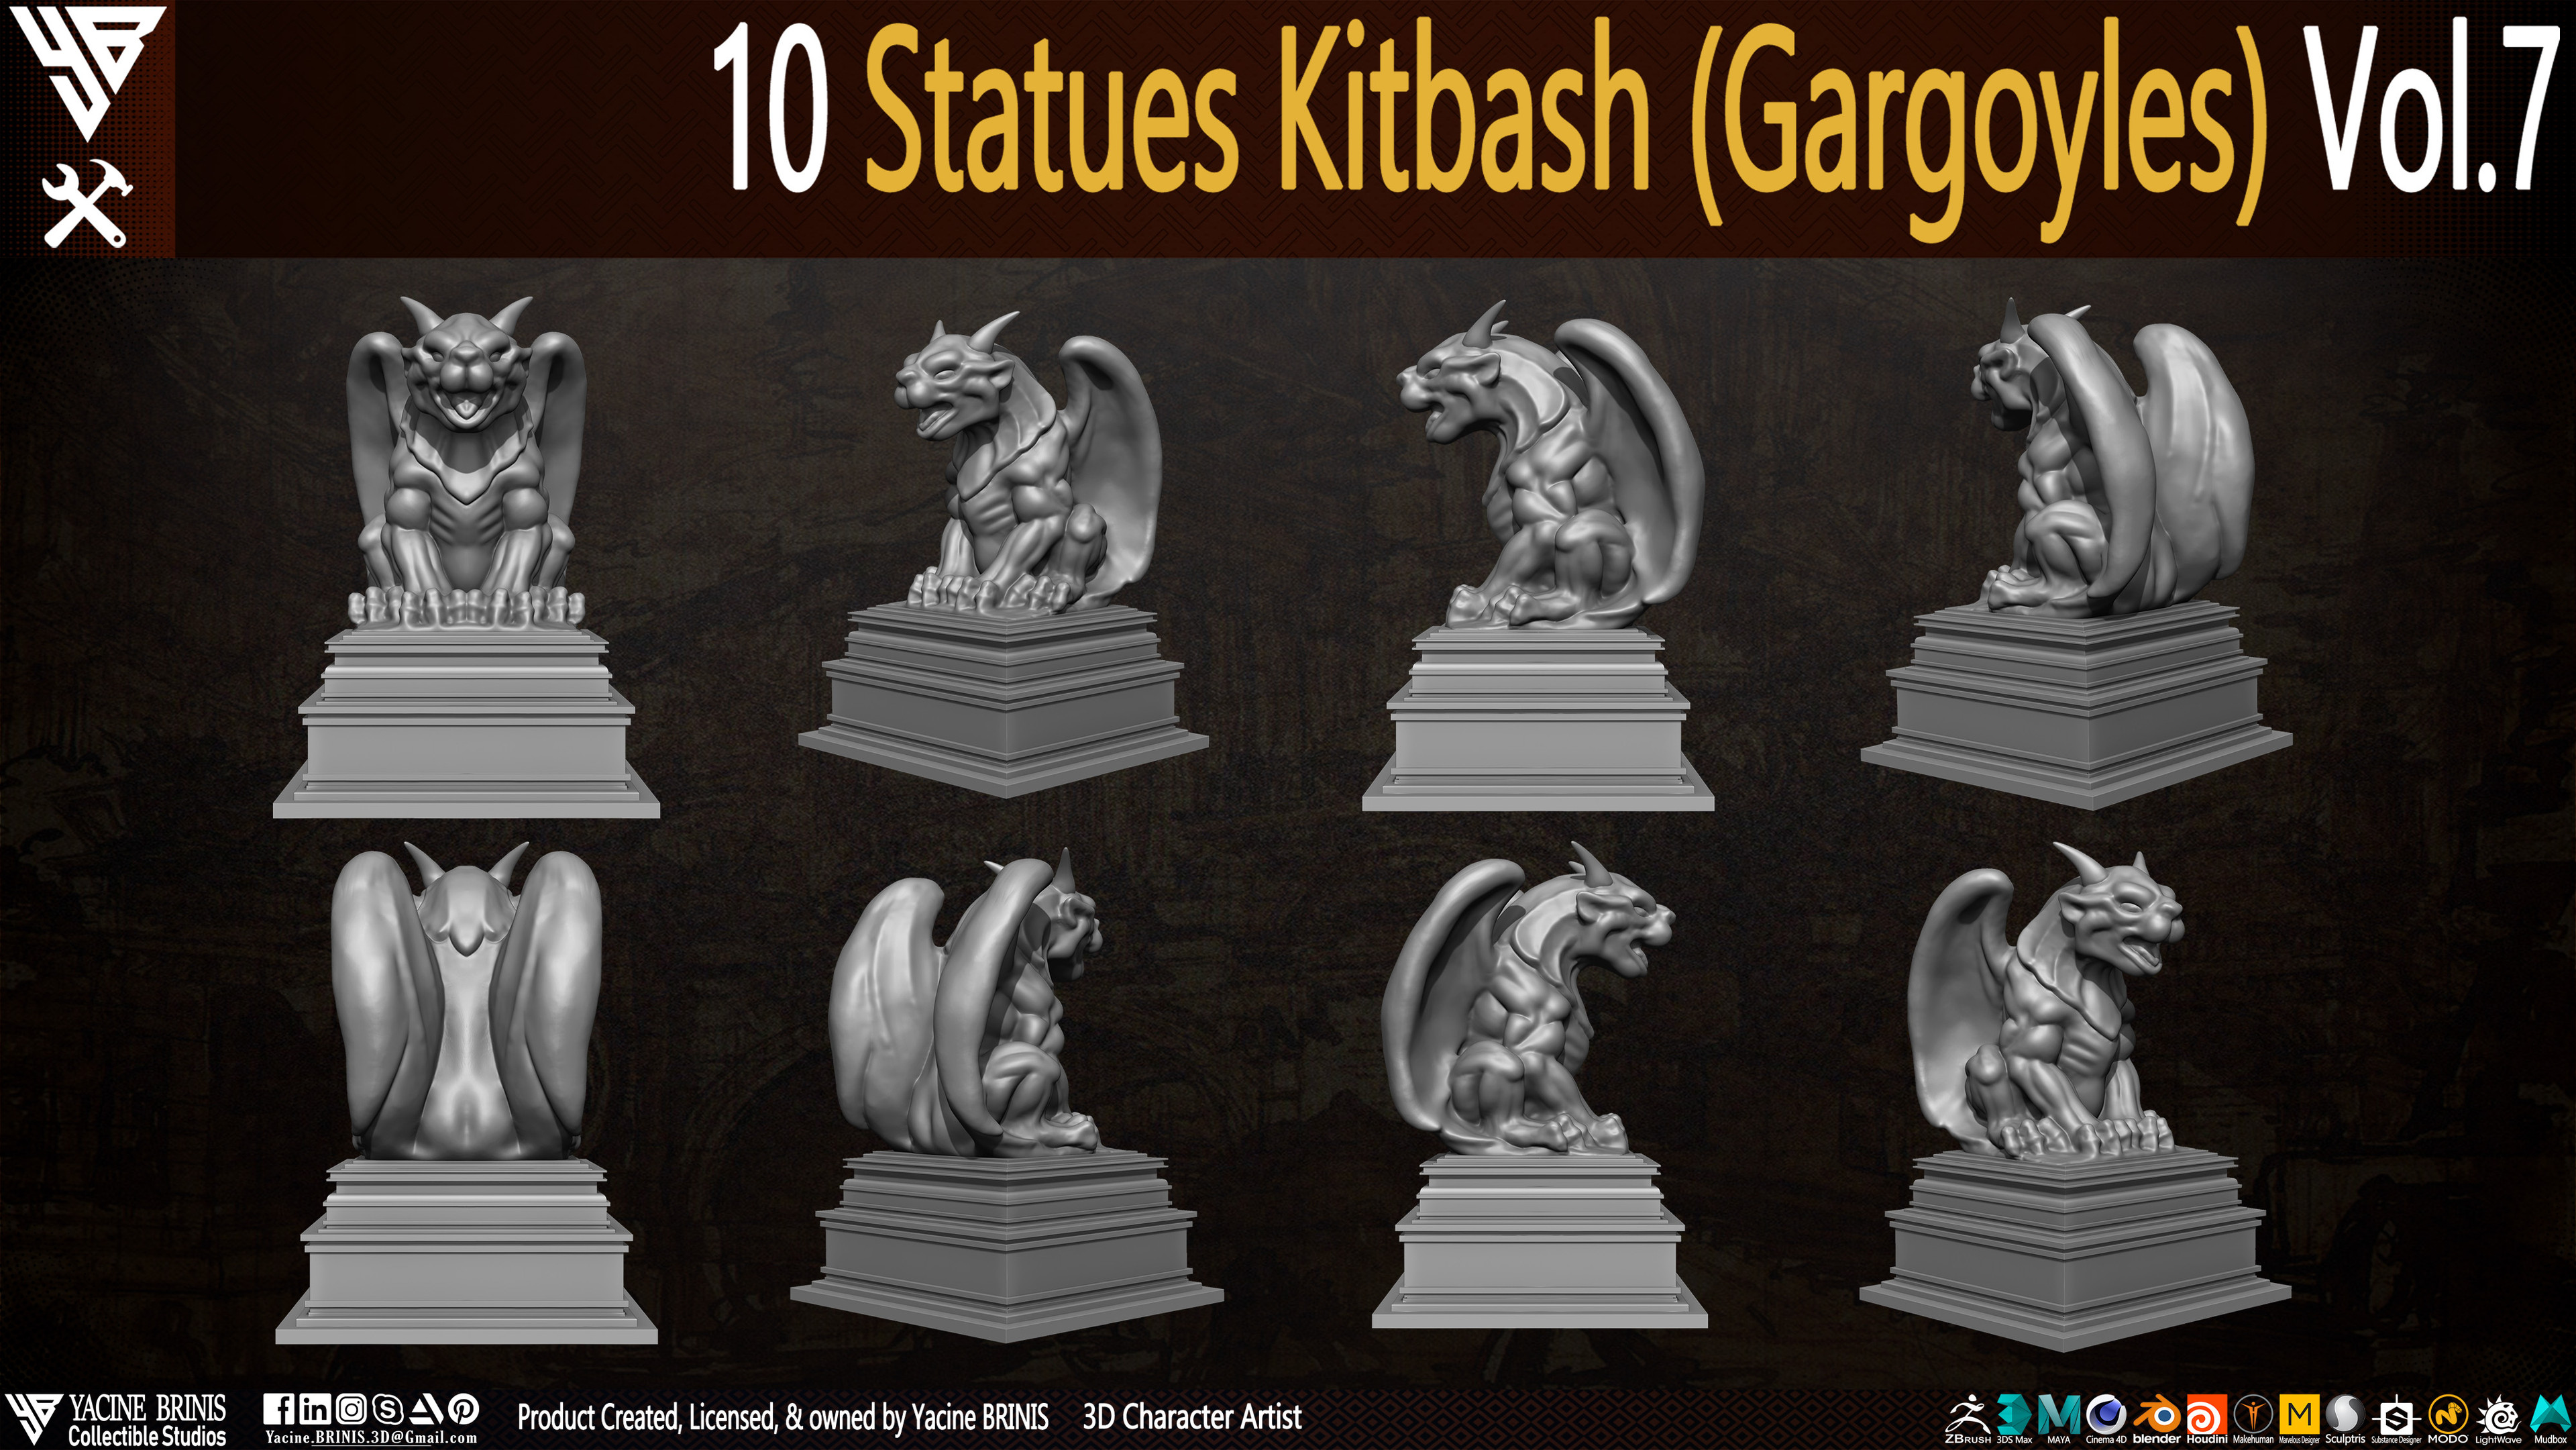 Statues Kitbash by yacine brinis Set 53